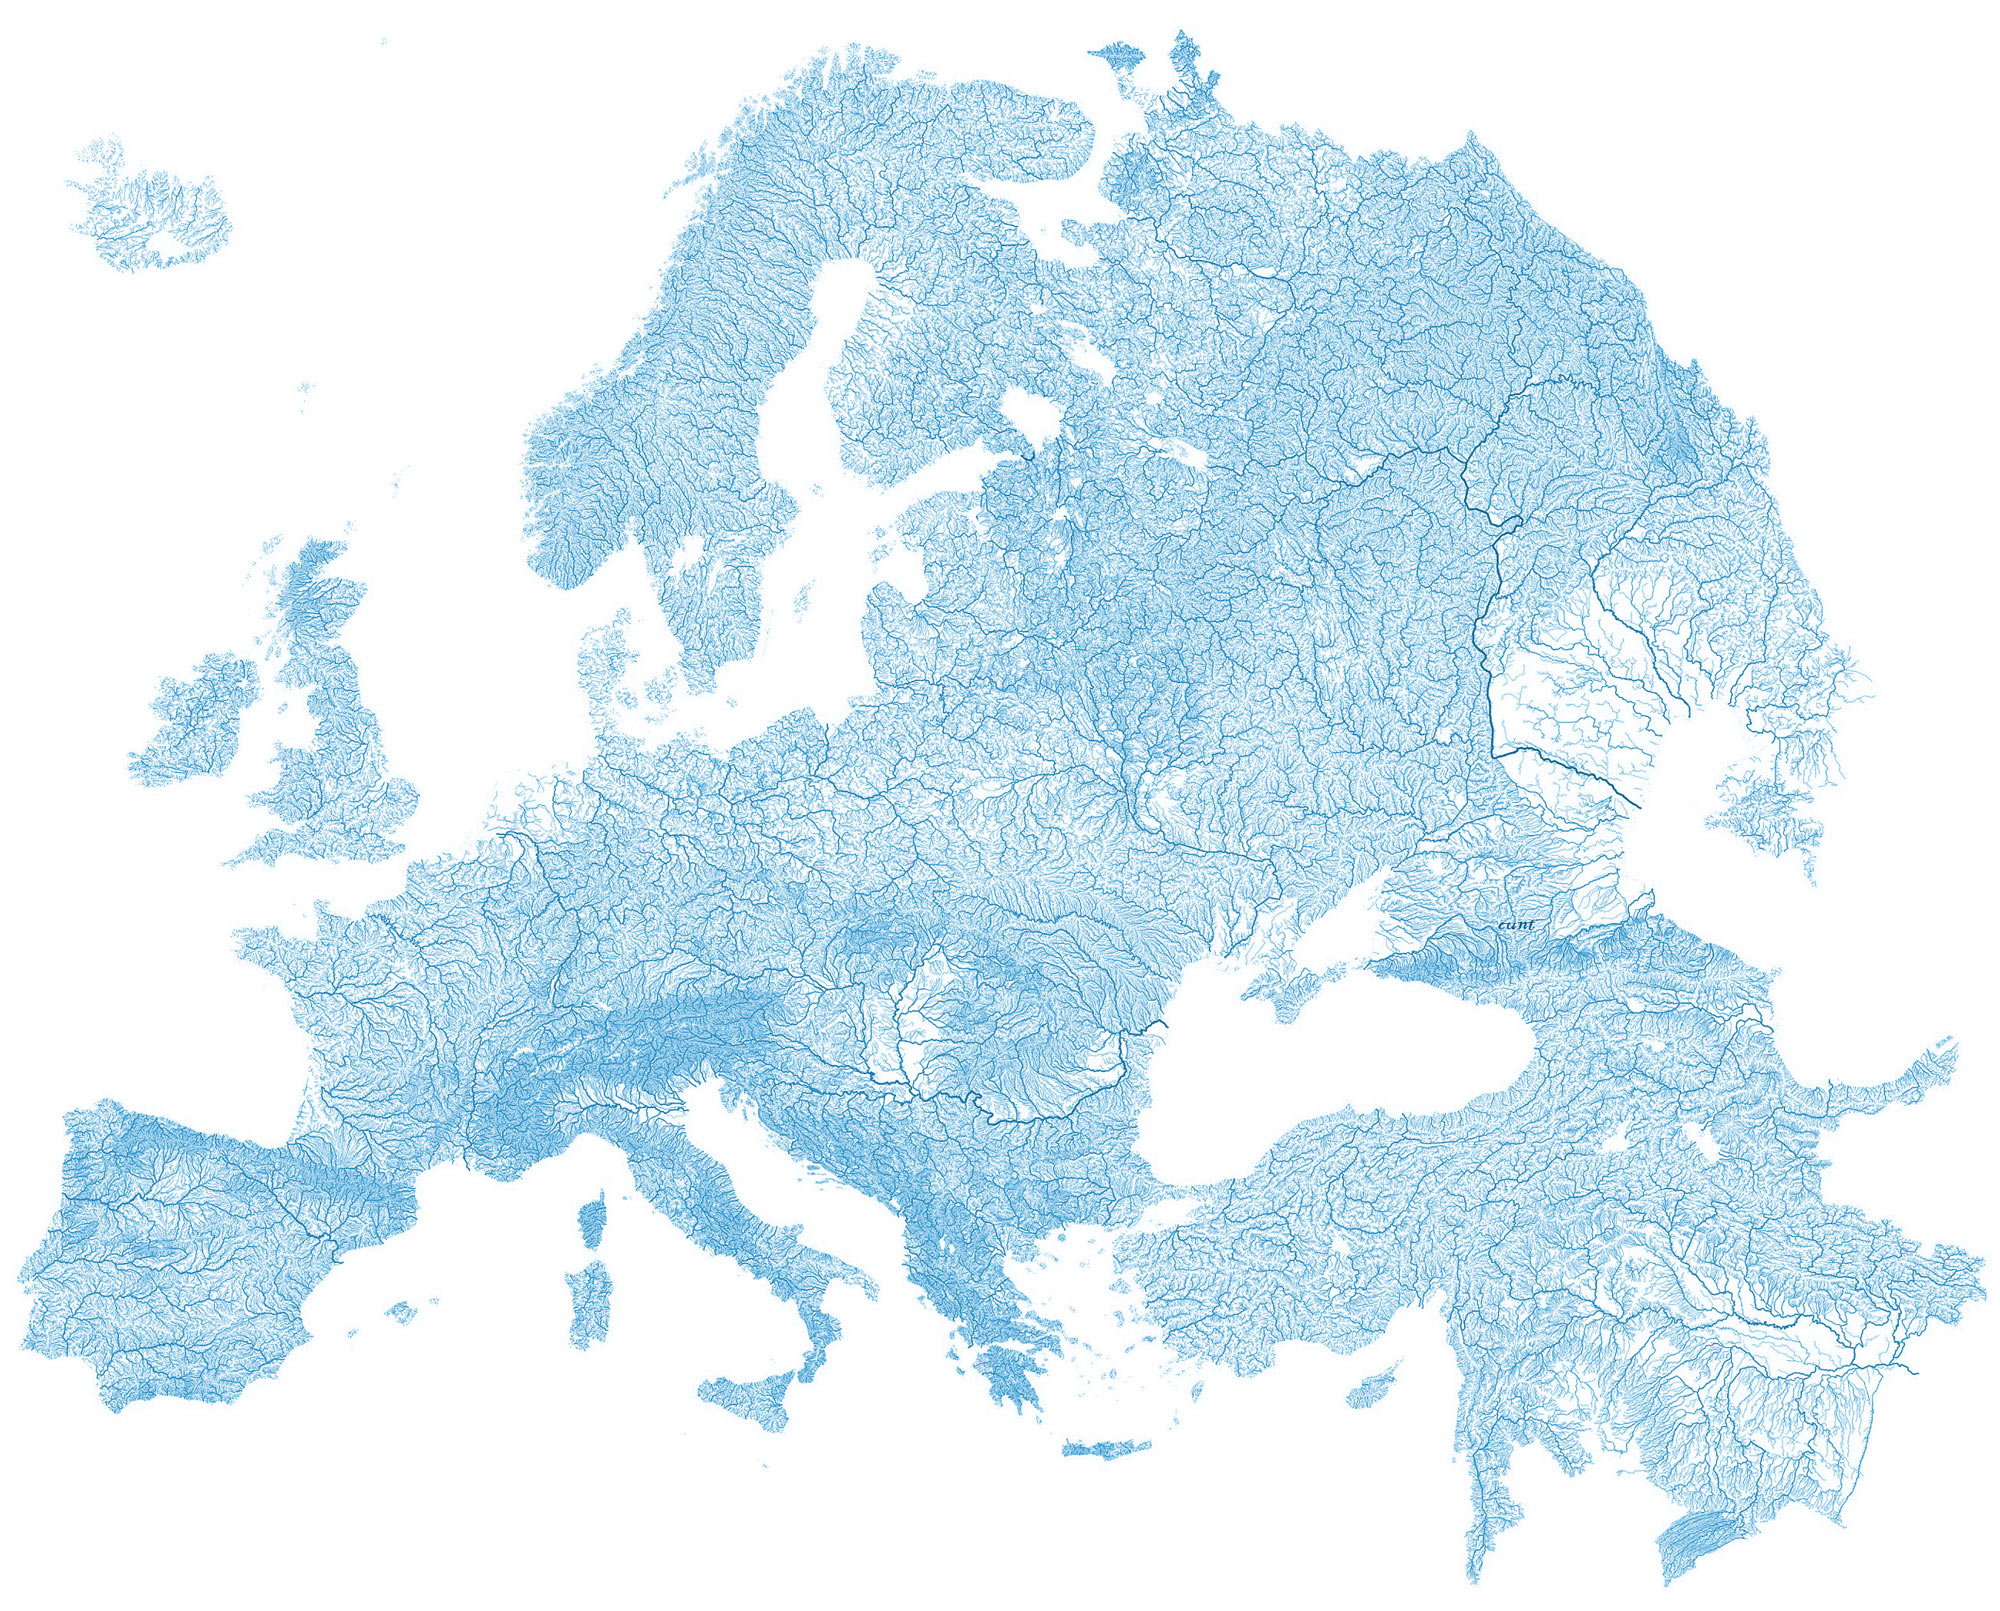 carte-des-cours-d-eau-europe_vorteX-io